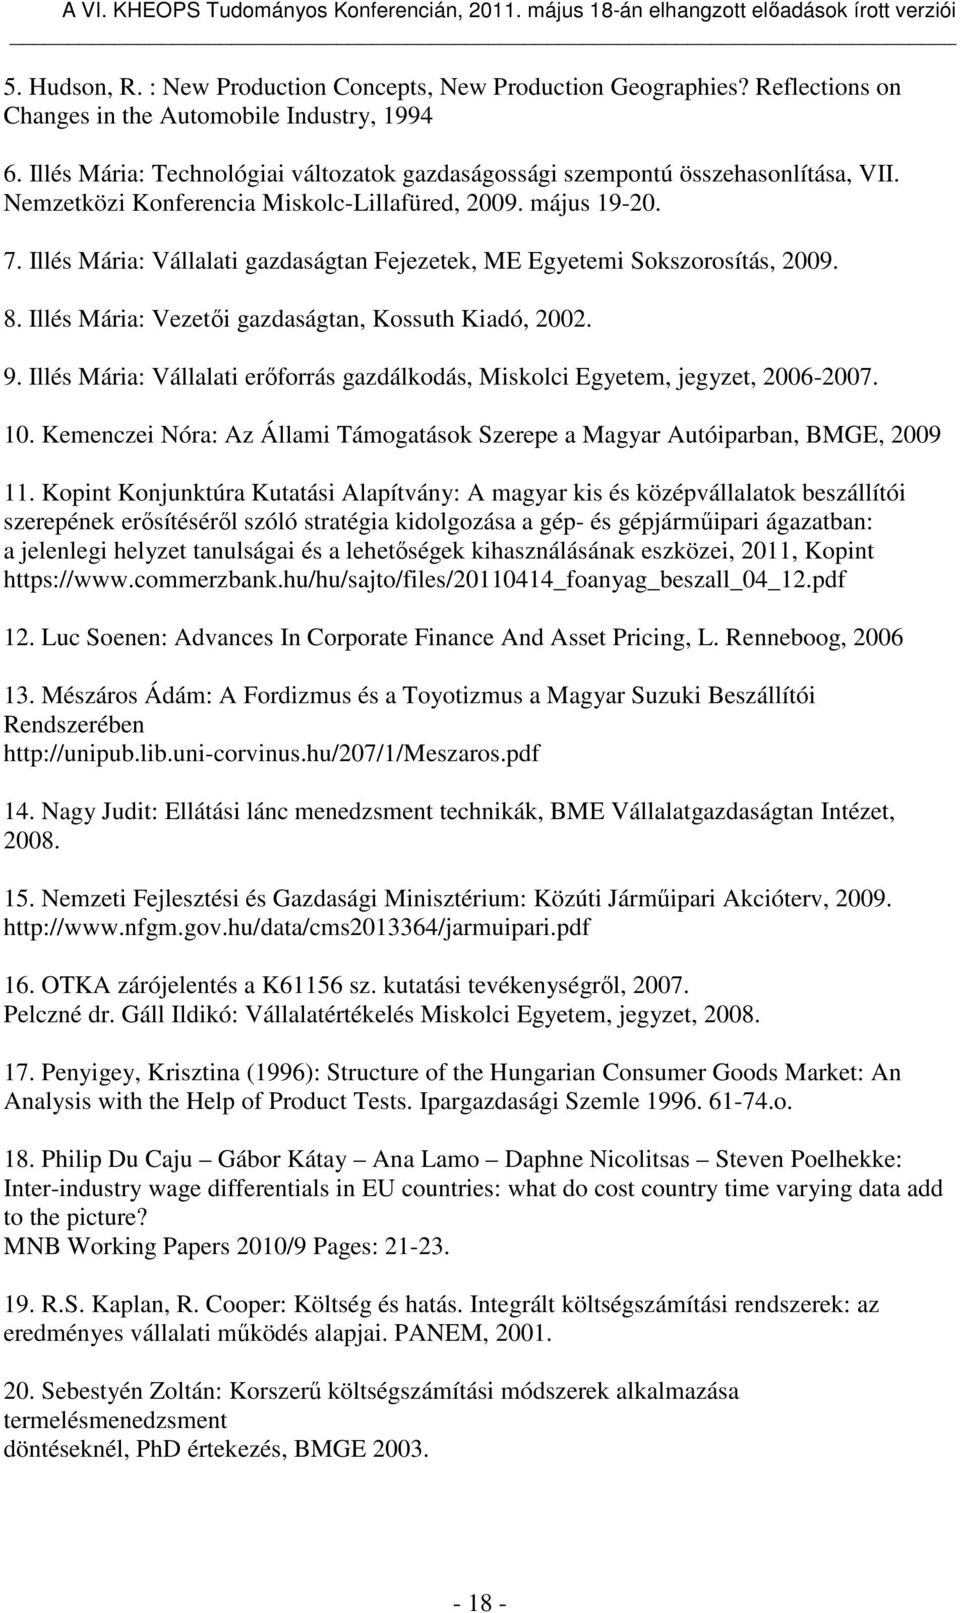 Illés Mária: Vállalati gazdaságtan Fejezetek, ME Egyetemi Sokszorosítás, 2009. 8. Illés Mária: Vezetői gazdaságtan, Kossuth Kiadó, 2002. 9.